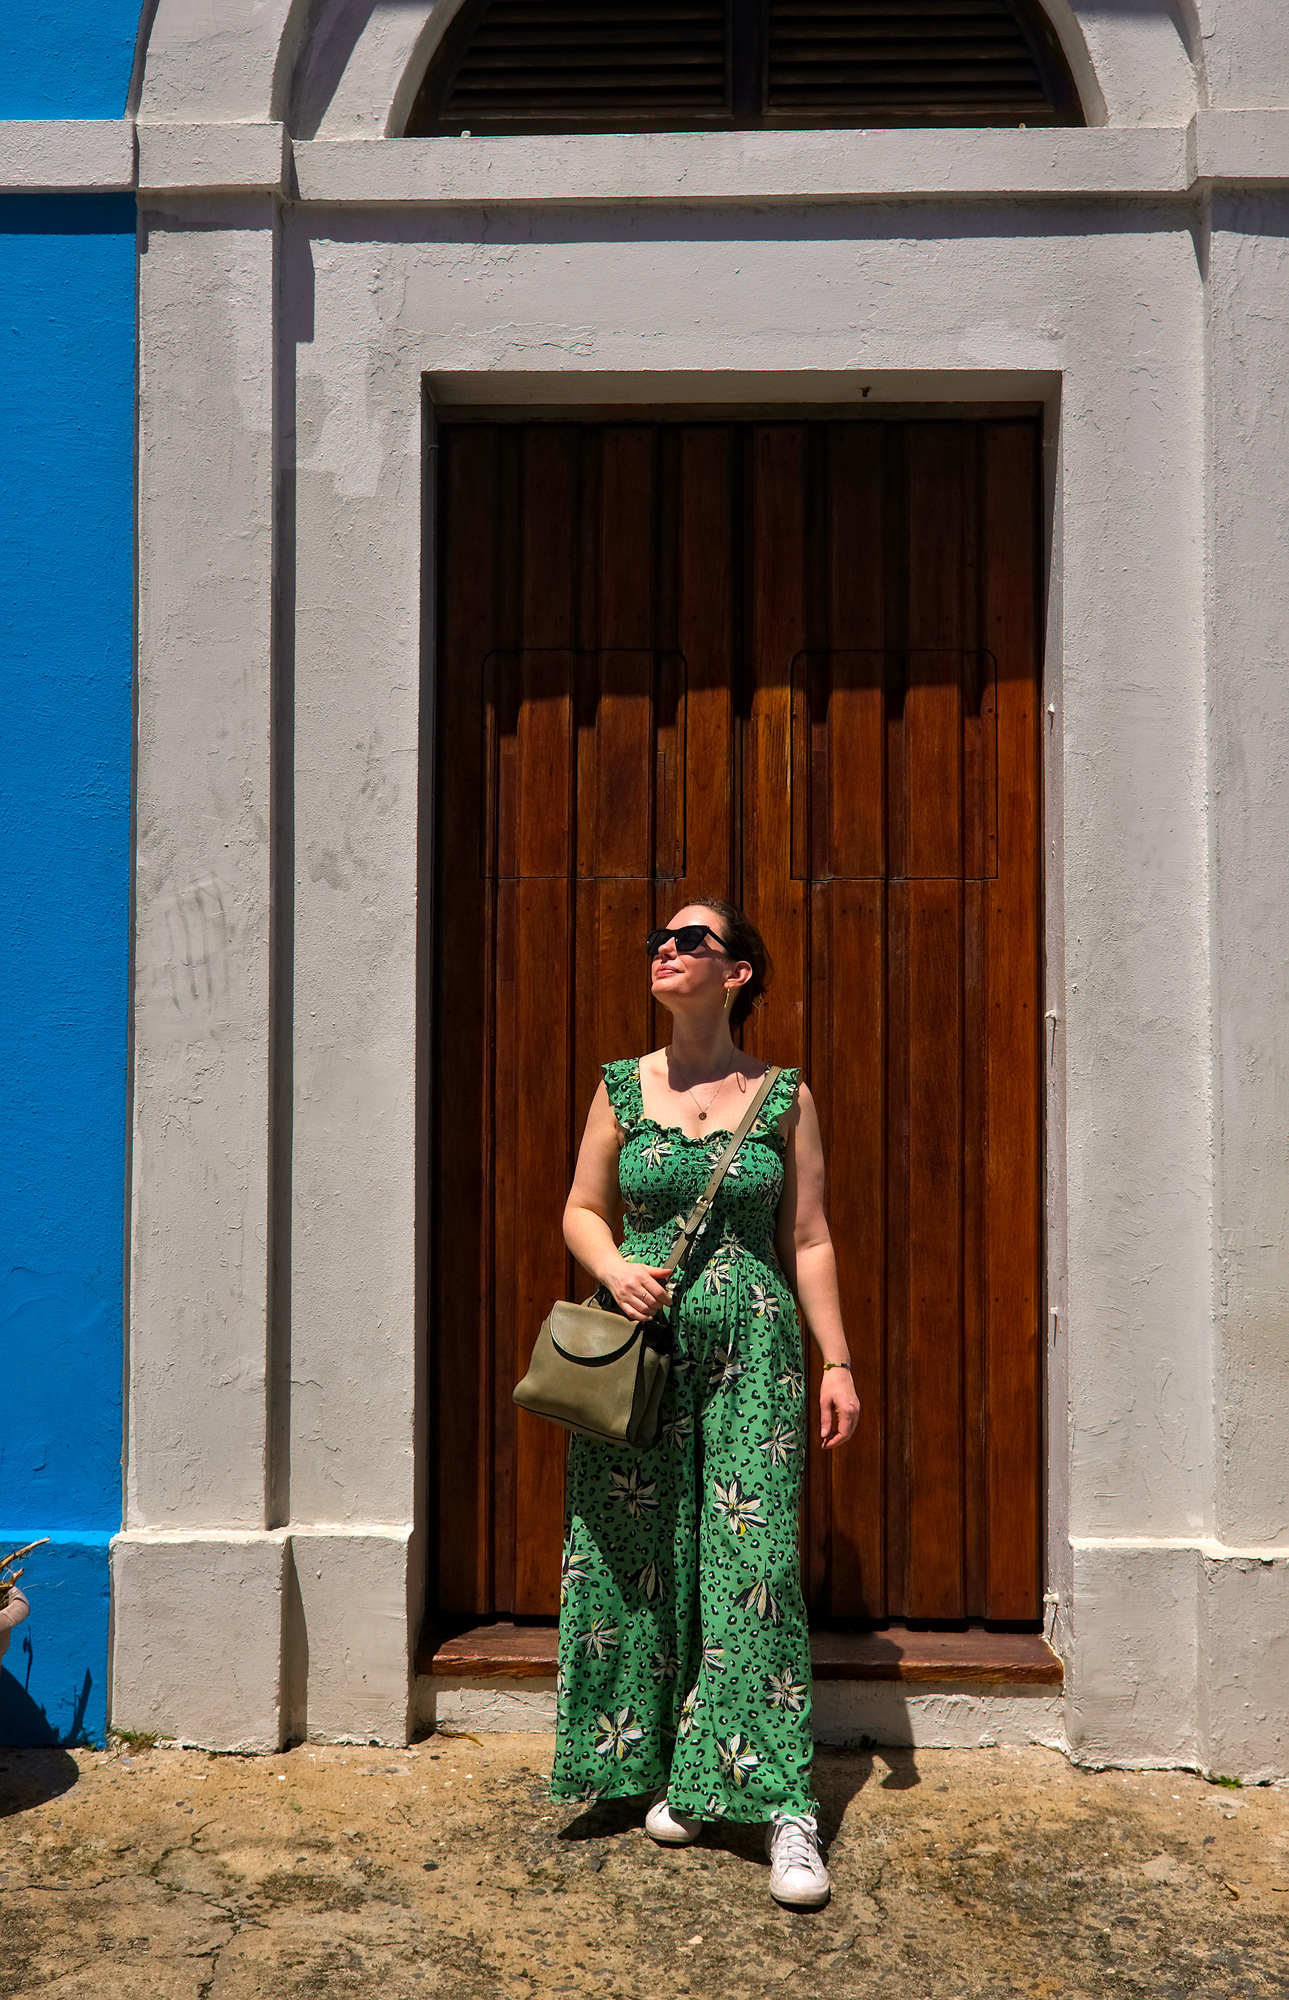 Alyssa in front of a blue building with a brown door in Old San Juan